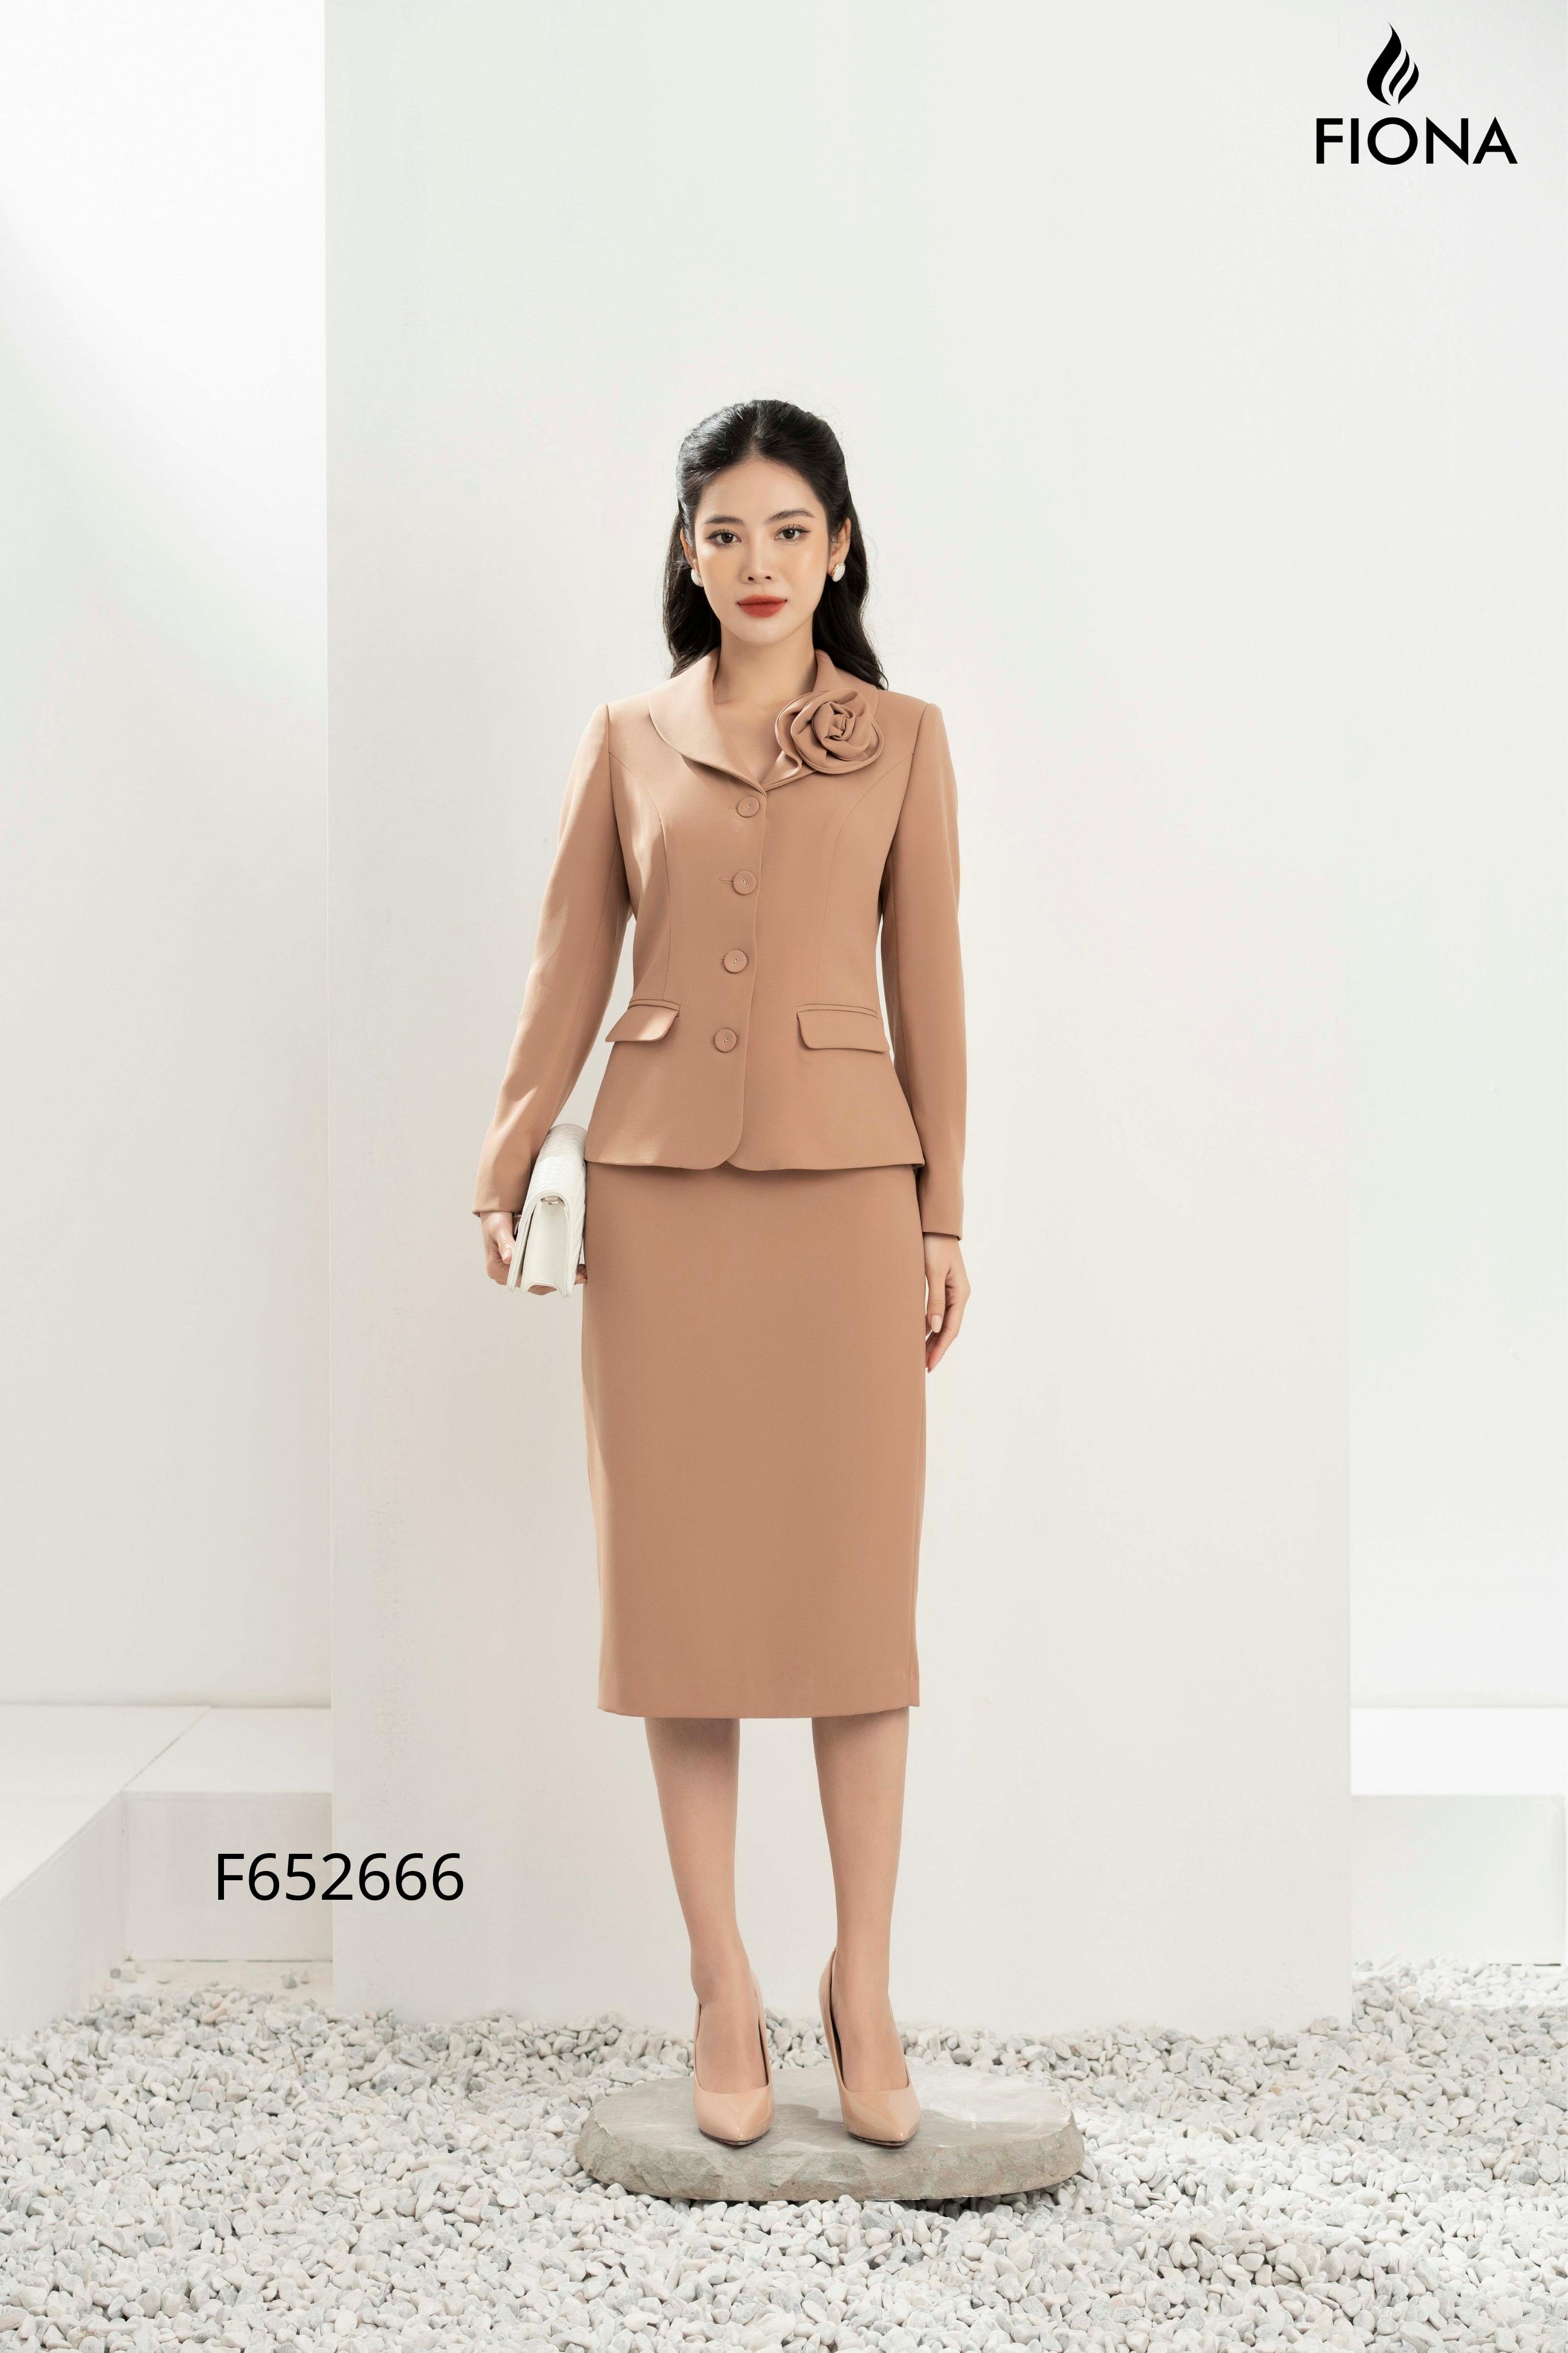 Top 10 shop bán áo vest nữ đẹp nhất ở Hà Nội - sakurafashion.vn